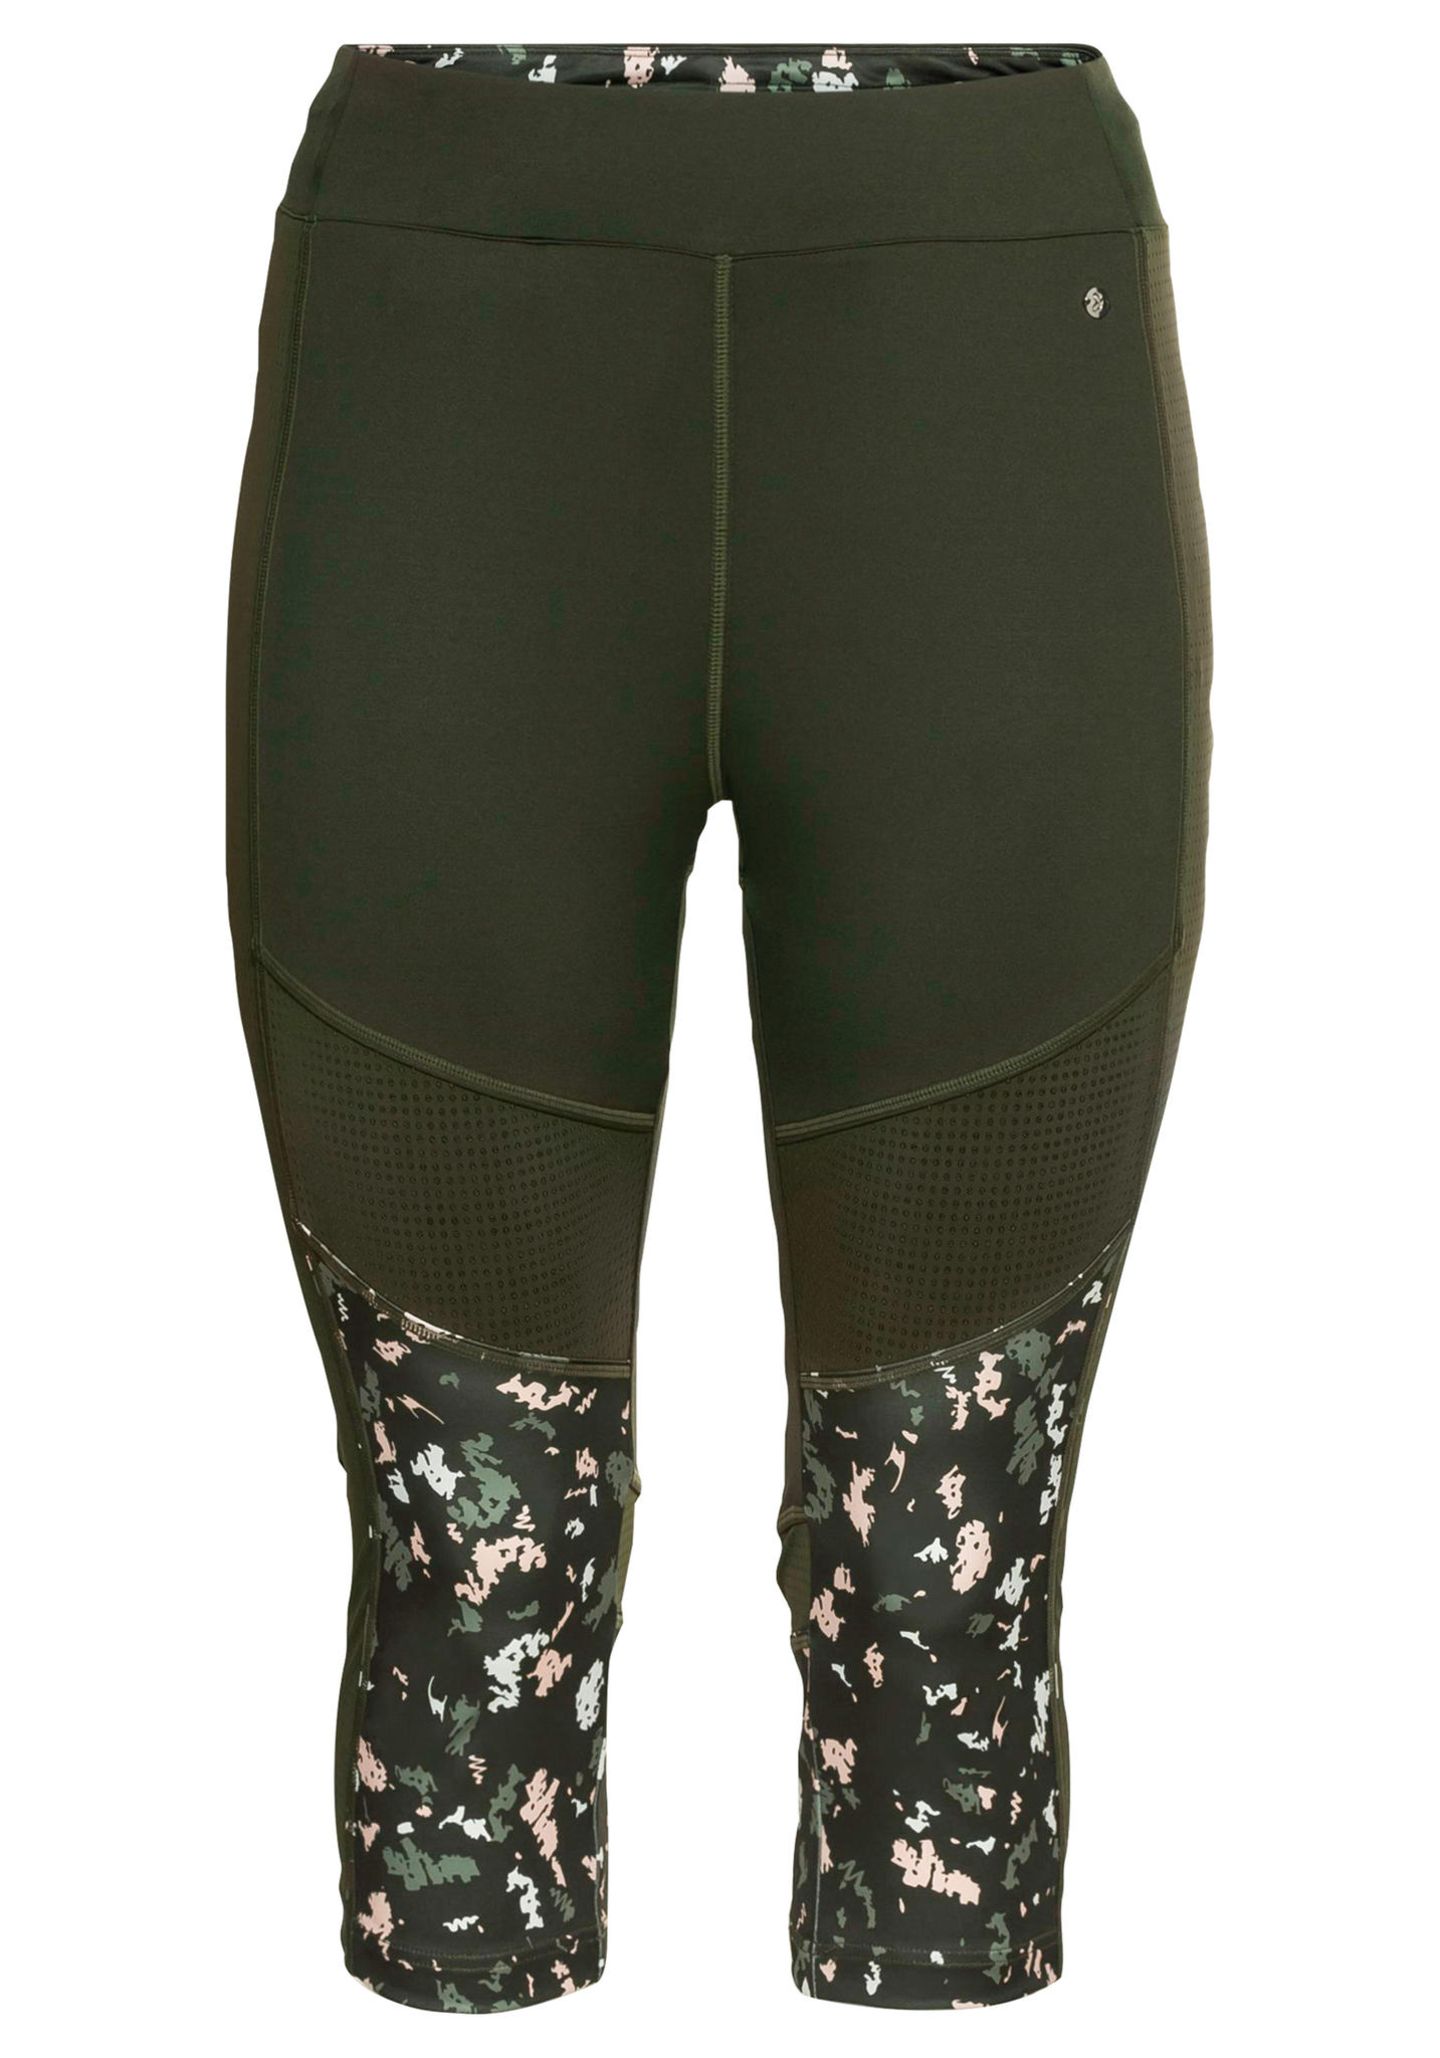 Das Label Sheego launcht eine neue Sportkollektion. Mit dabei ist unter anderem diese dunkelgrüne Capri-Leggings. Sie sieht aber nicht nur schön aus, sondern besteht aus nachhaltigen Polyesterfasern. Von Sheego, etwa 40 Euro.